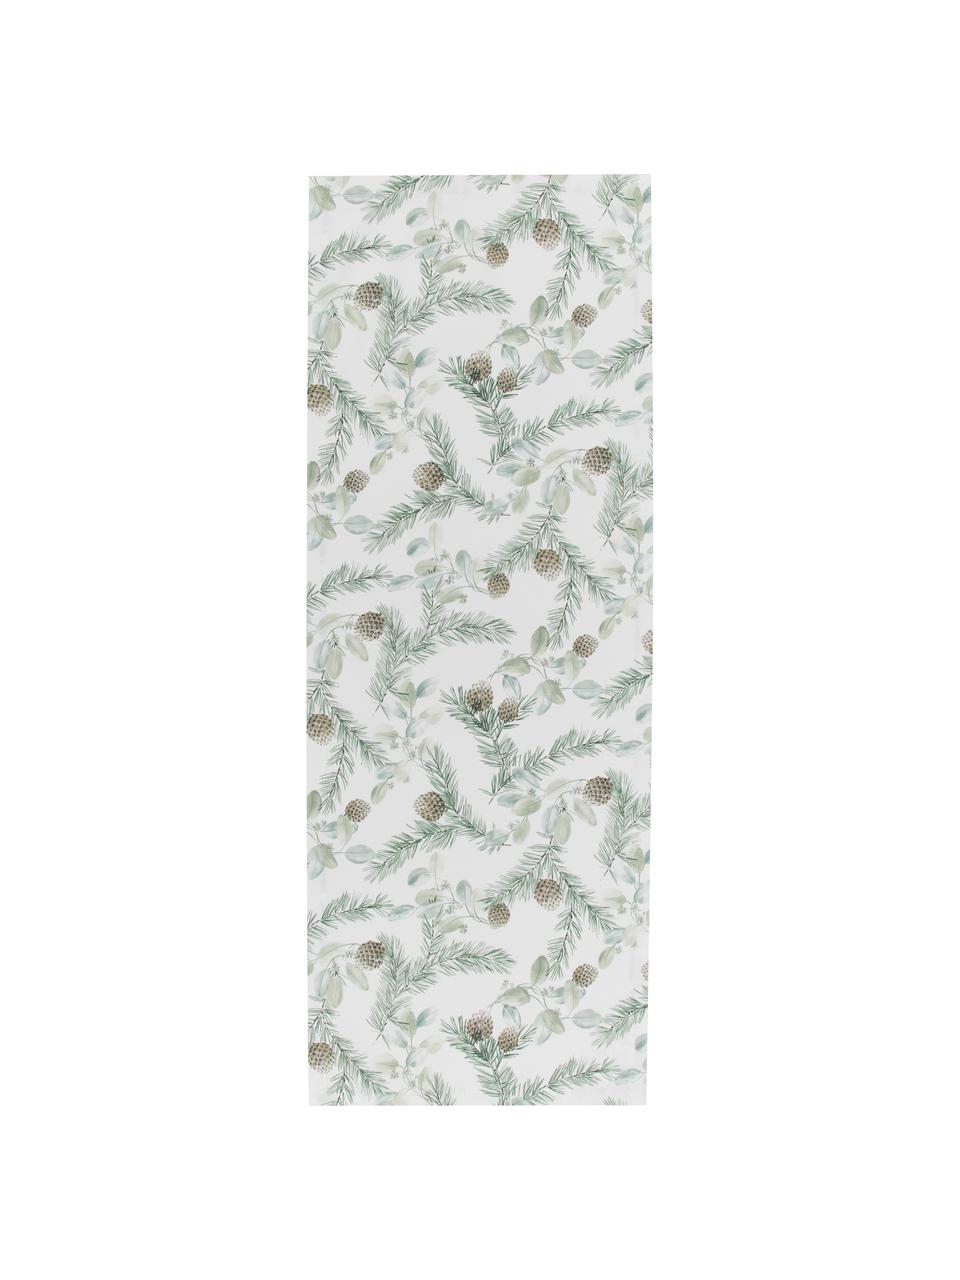 Katoenen tafelloper Pinolo met dennenmotief, 100% katoen, Groen, bruin, wit, 50 x 140 cm